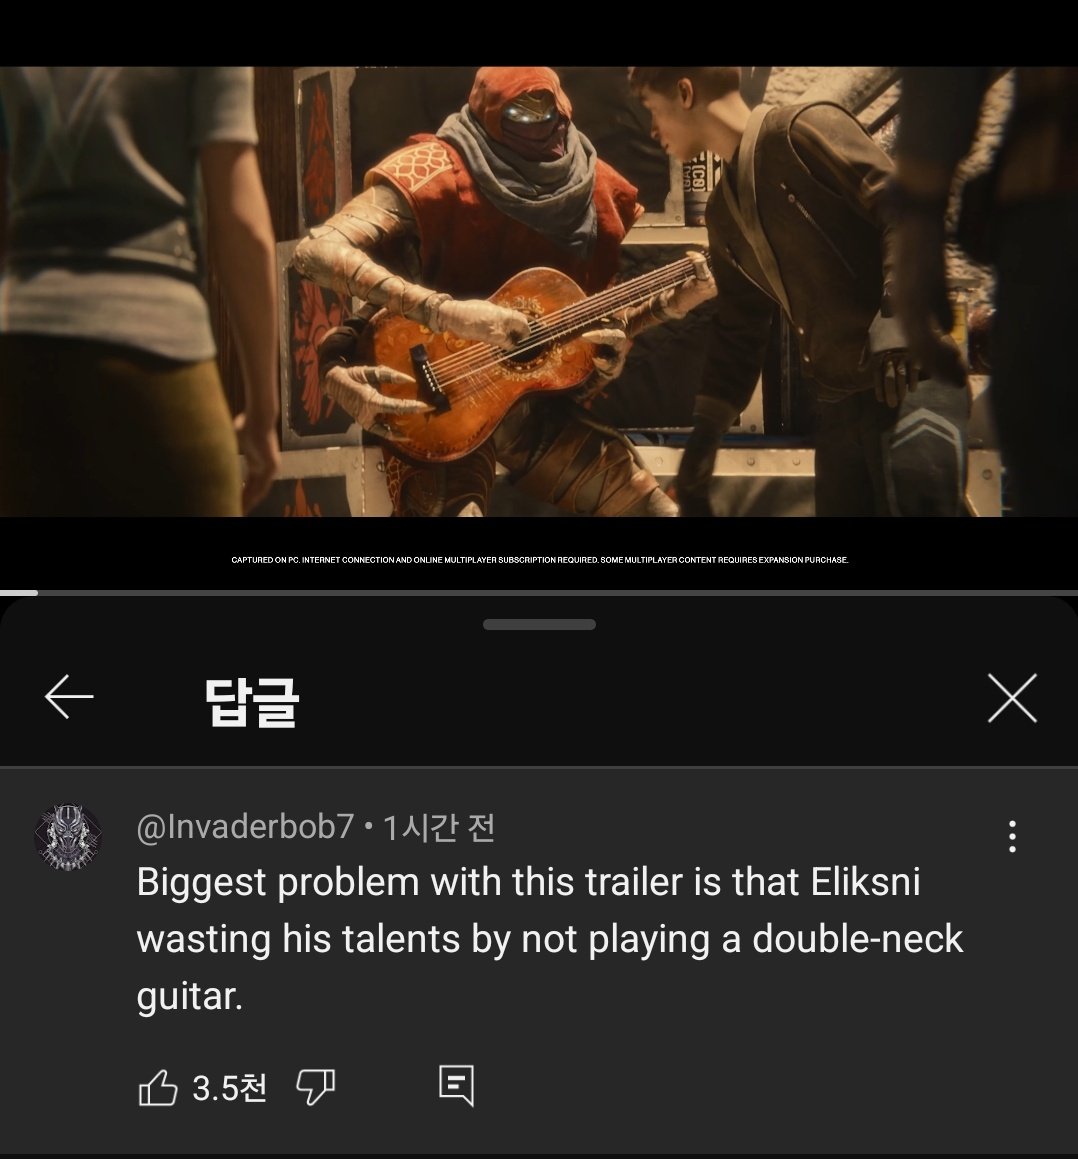 최형 유튜브 반응 개웃김
: 이번 트레일러에 존나 치명적인 문제는 
엘릭스니에게 더블 기타를 주지 않은거임 이거 재능낭비임 

ㅁㅊㅋㅋㅋㅋㅋㅋㅋㅋㅋㅋㅋㅋㅋㅋㅋ